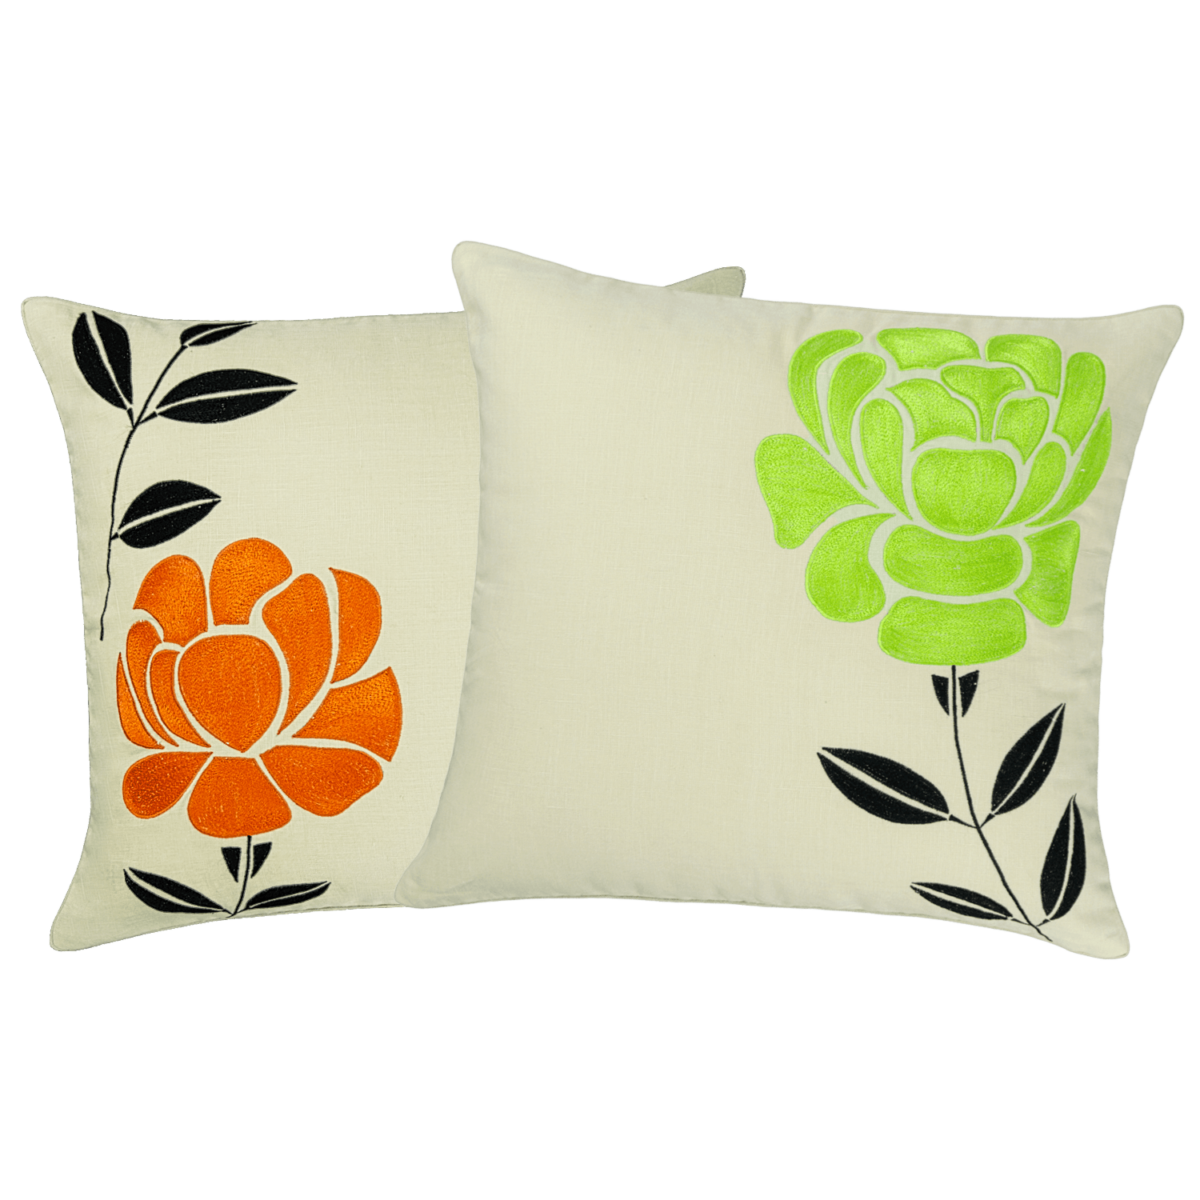 Soulmates Decorative Pillow linen 16" 16"